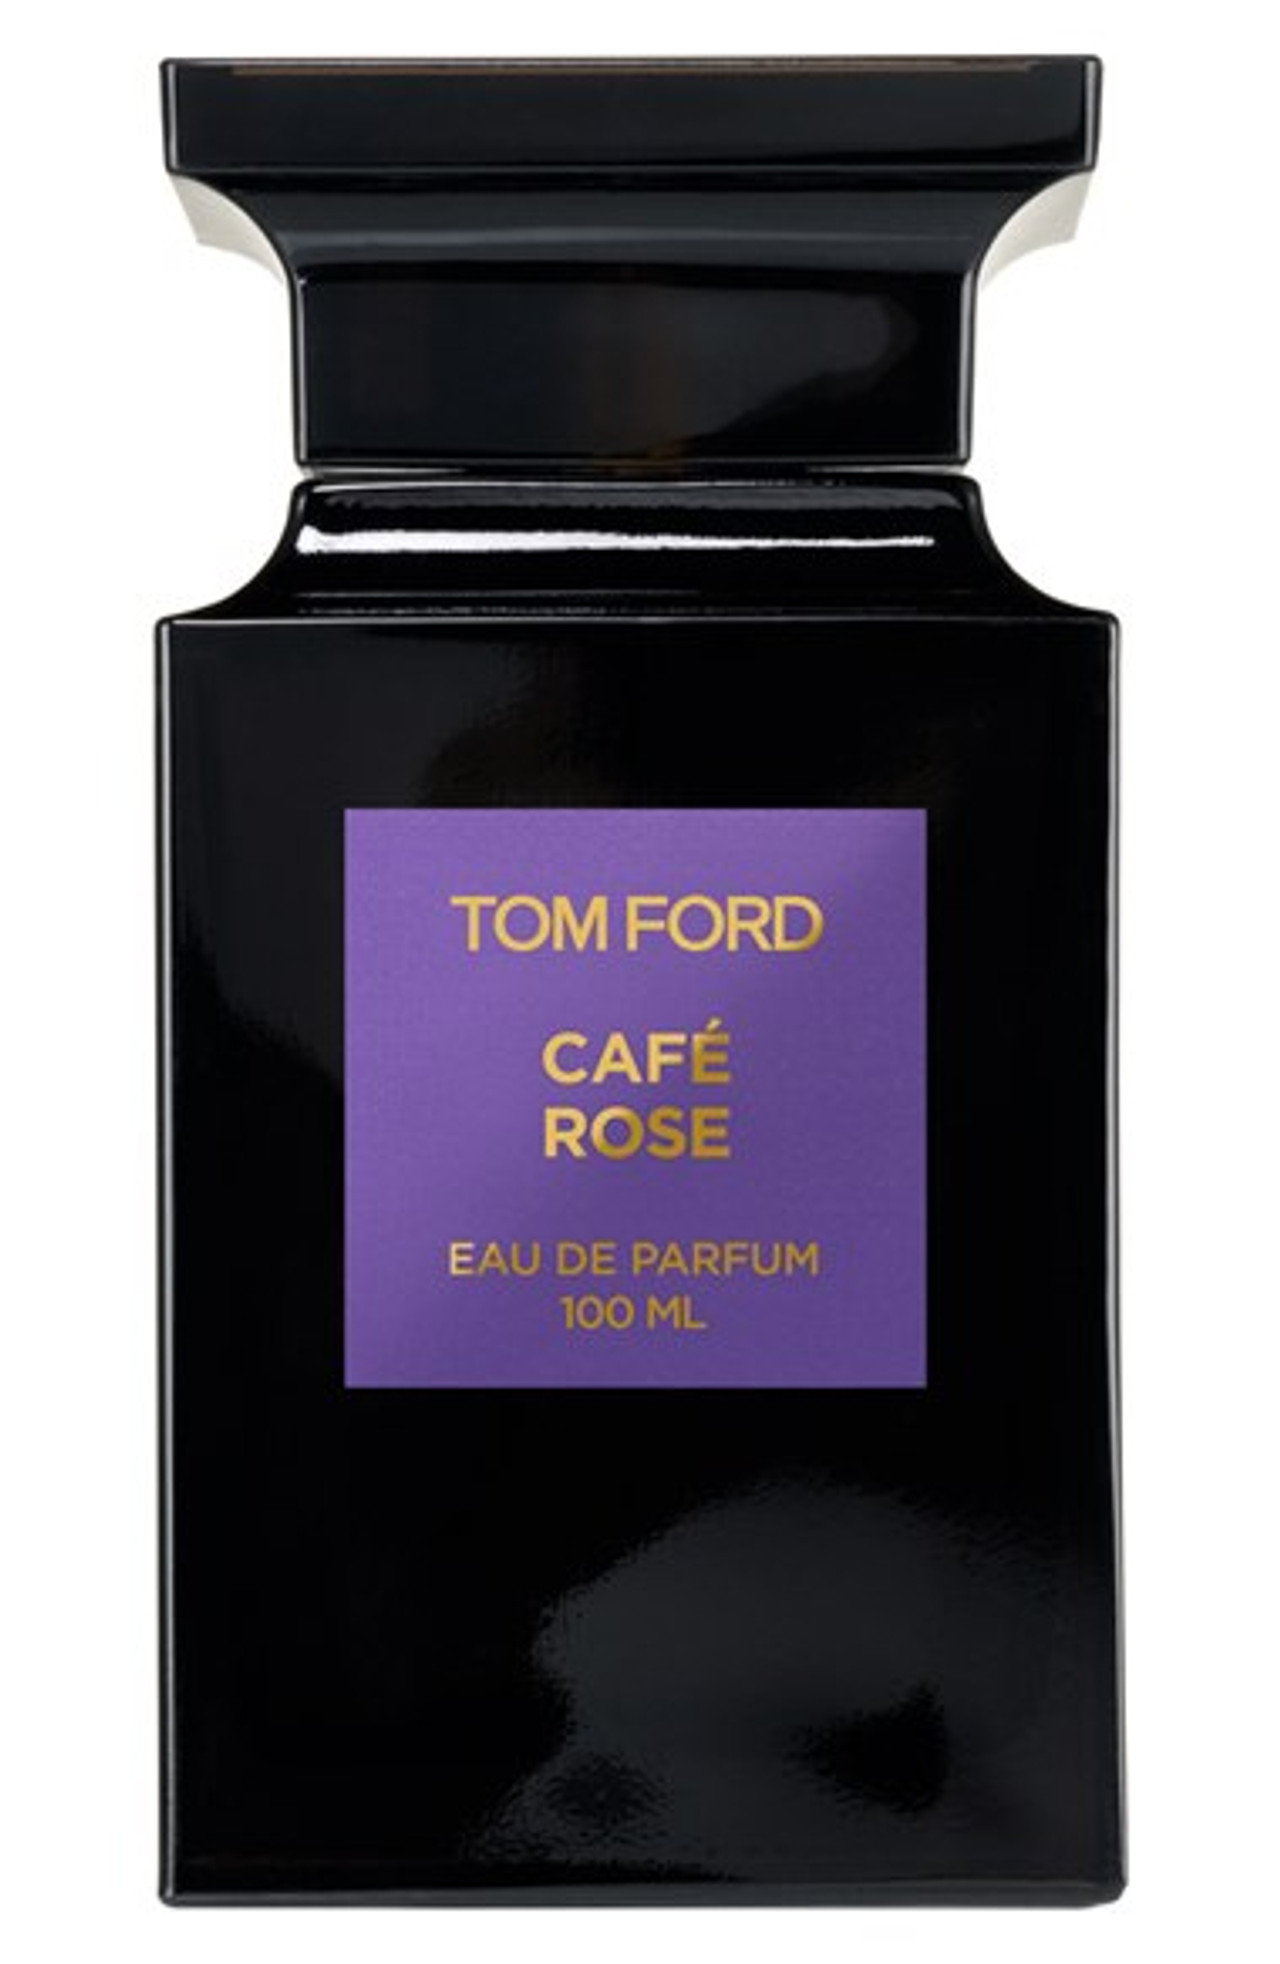 Tom Ford Cafe Rose Eau de Parfum 3.4 oz / 100 ml Spray * OPEN BOX ...